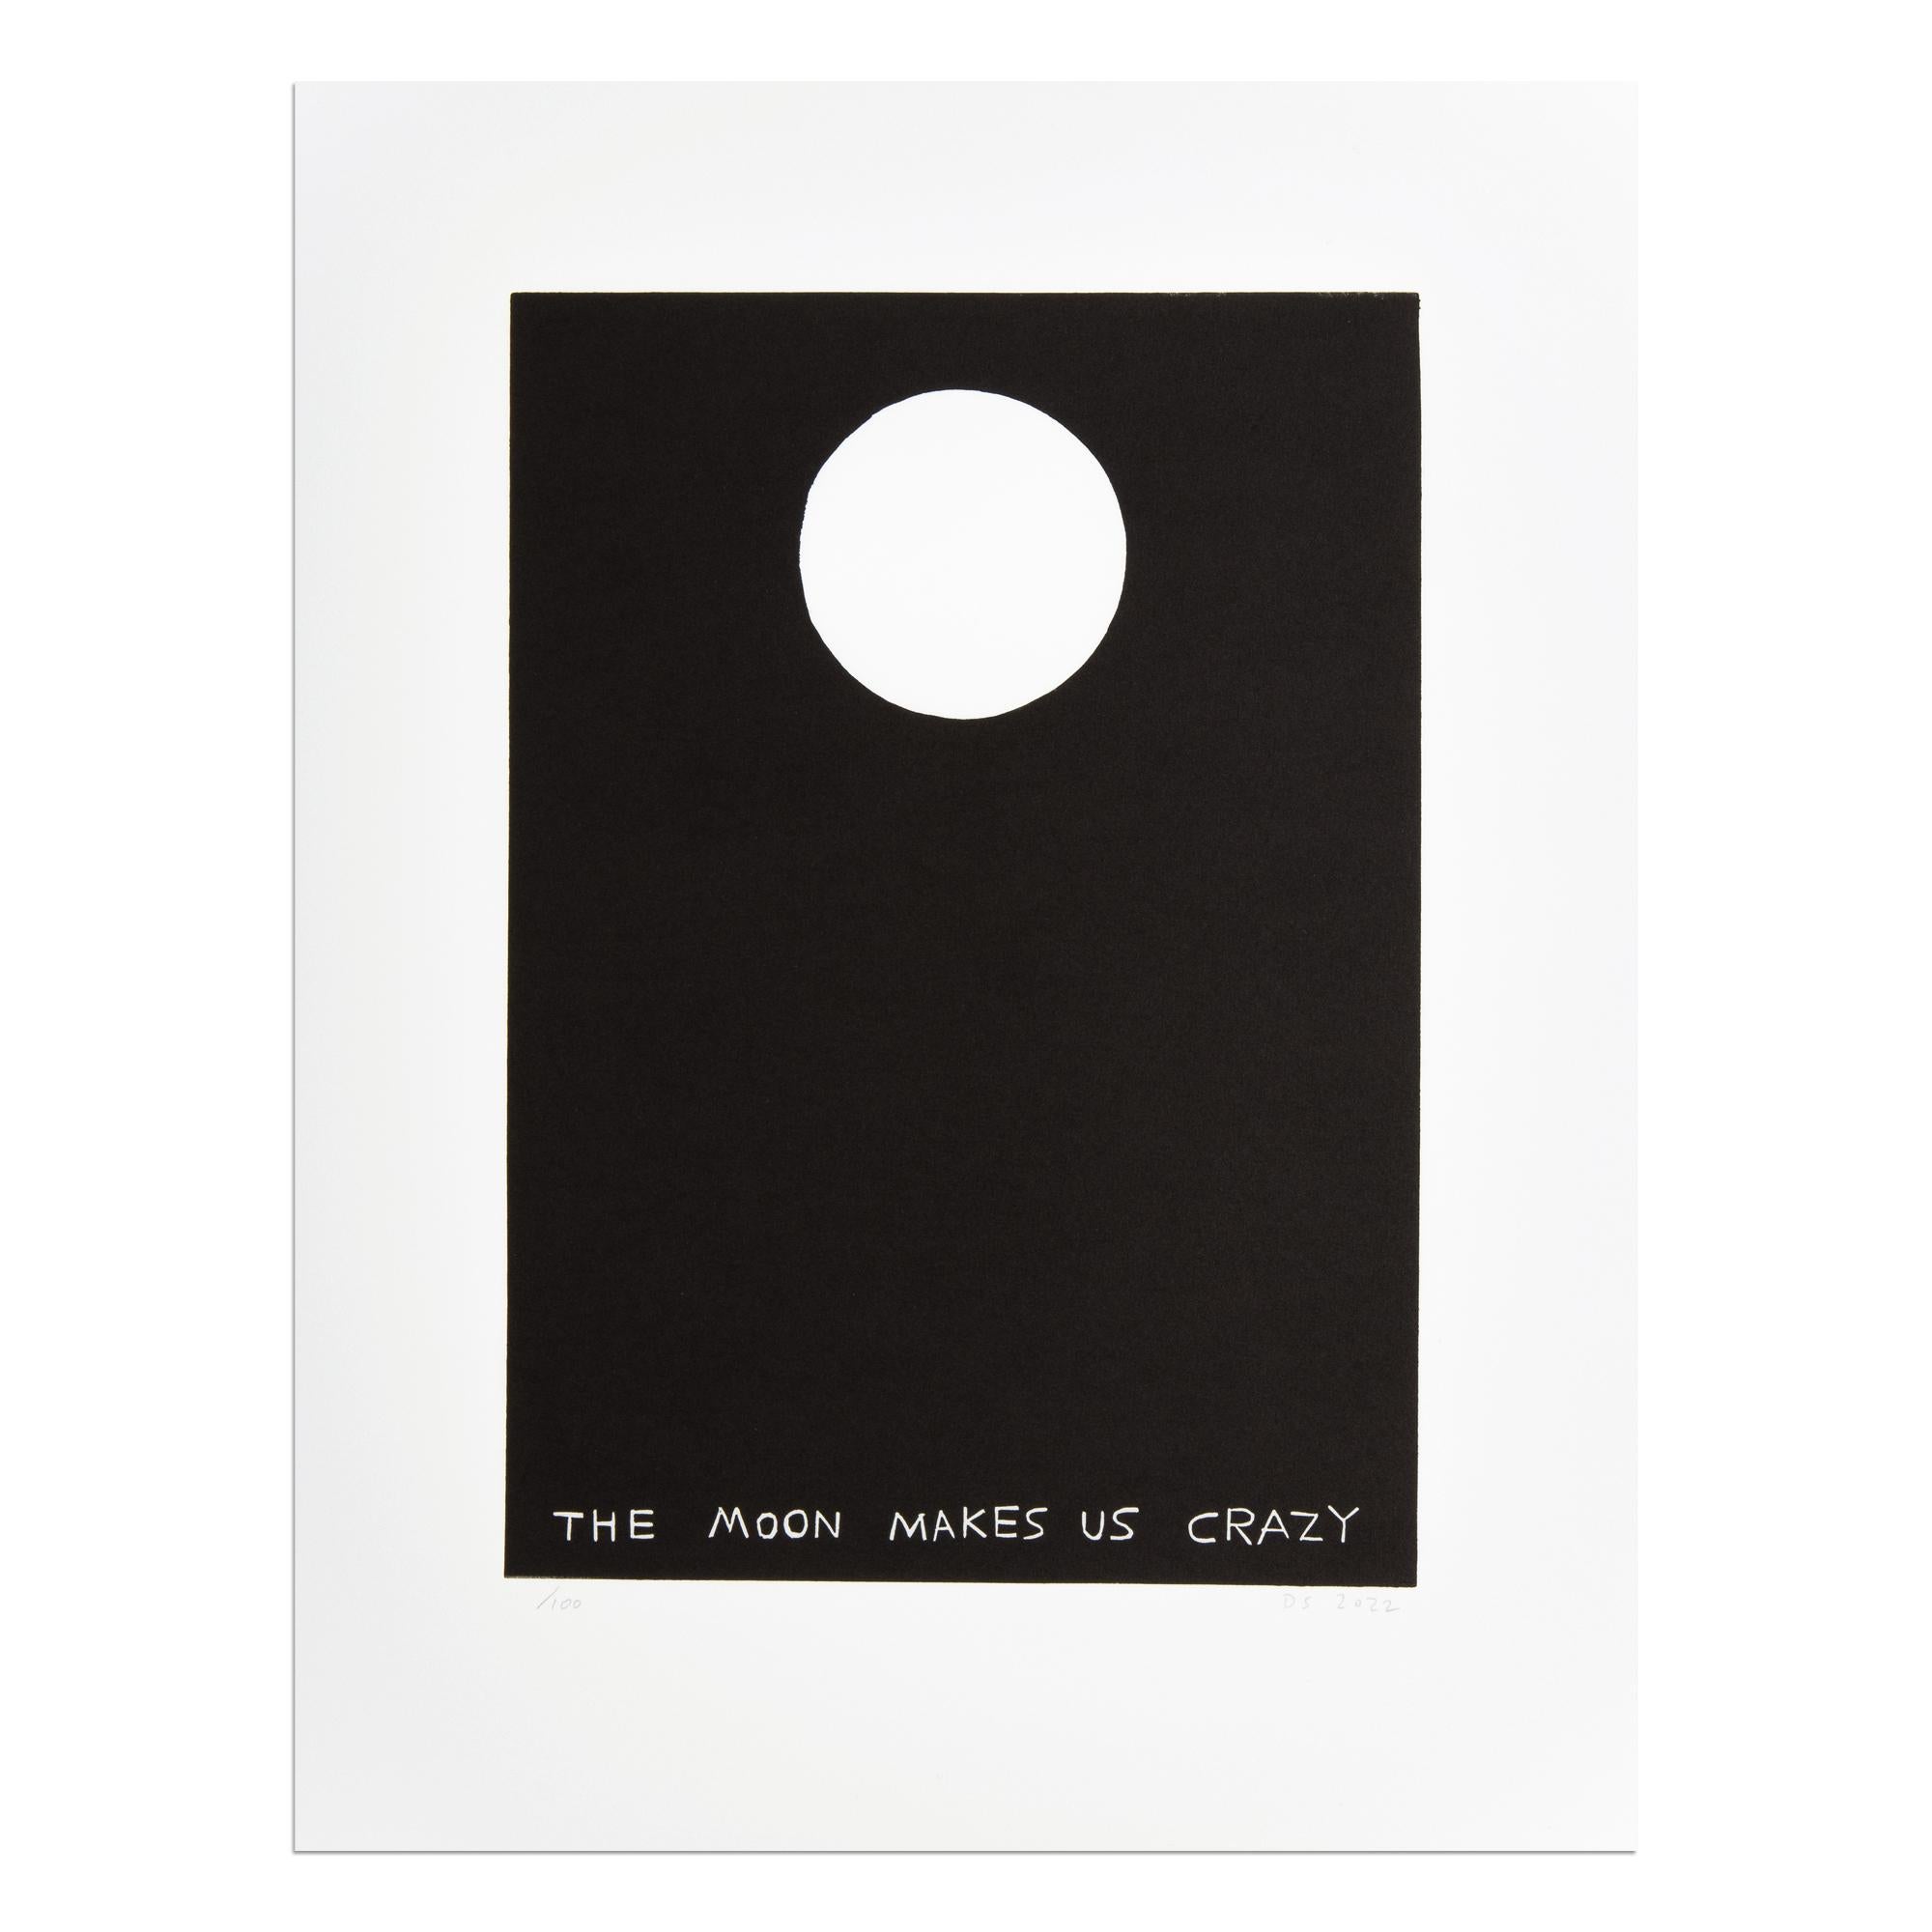 David Shrigley (Brite, geb. 1968)
Der Mond macht uns wahnsinnig, 2022
Medium: Linolschnitt auf Papier
Abmessungen: 41 x 31 cm
Auflage von 100 Stück: handsigniert und nummeriert
Zustand: Neuwertig